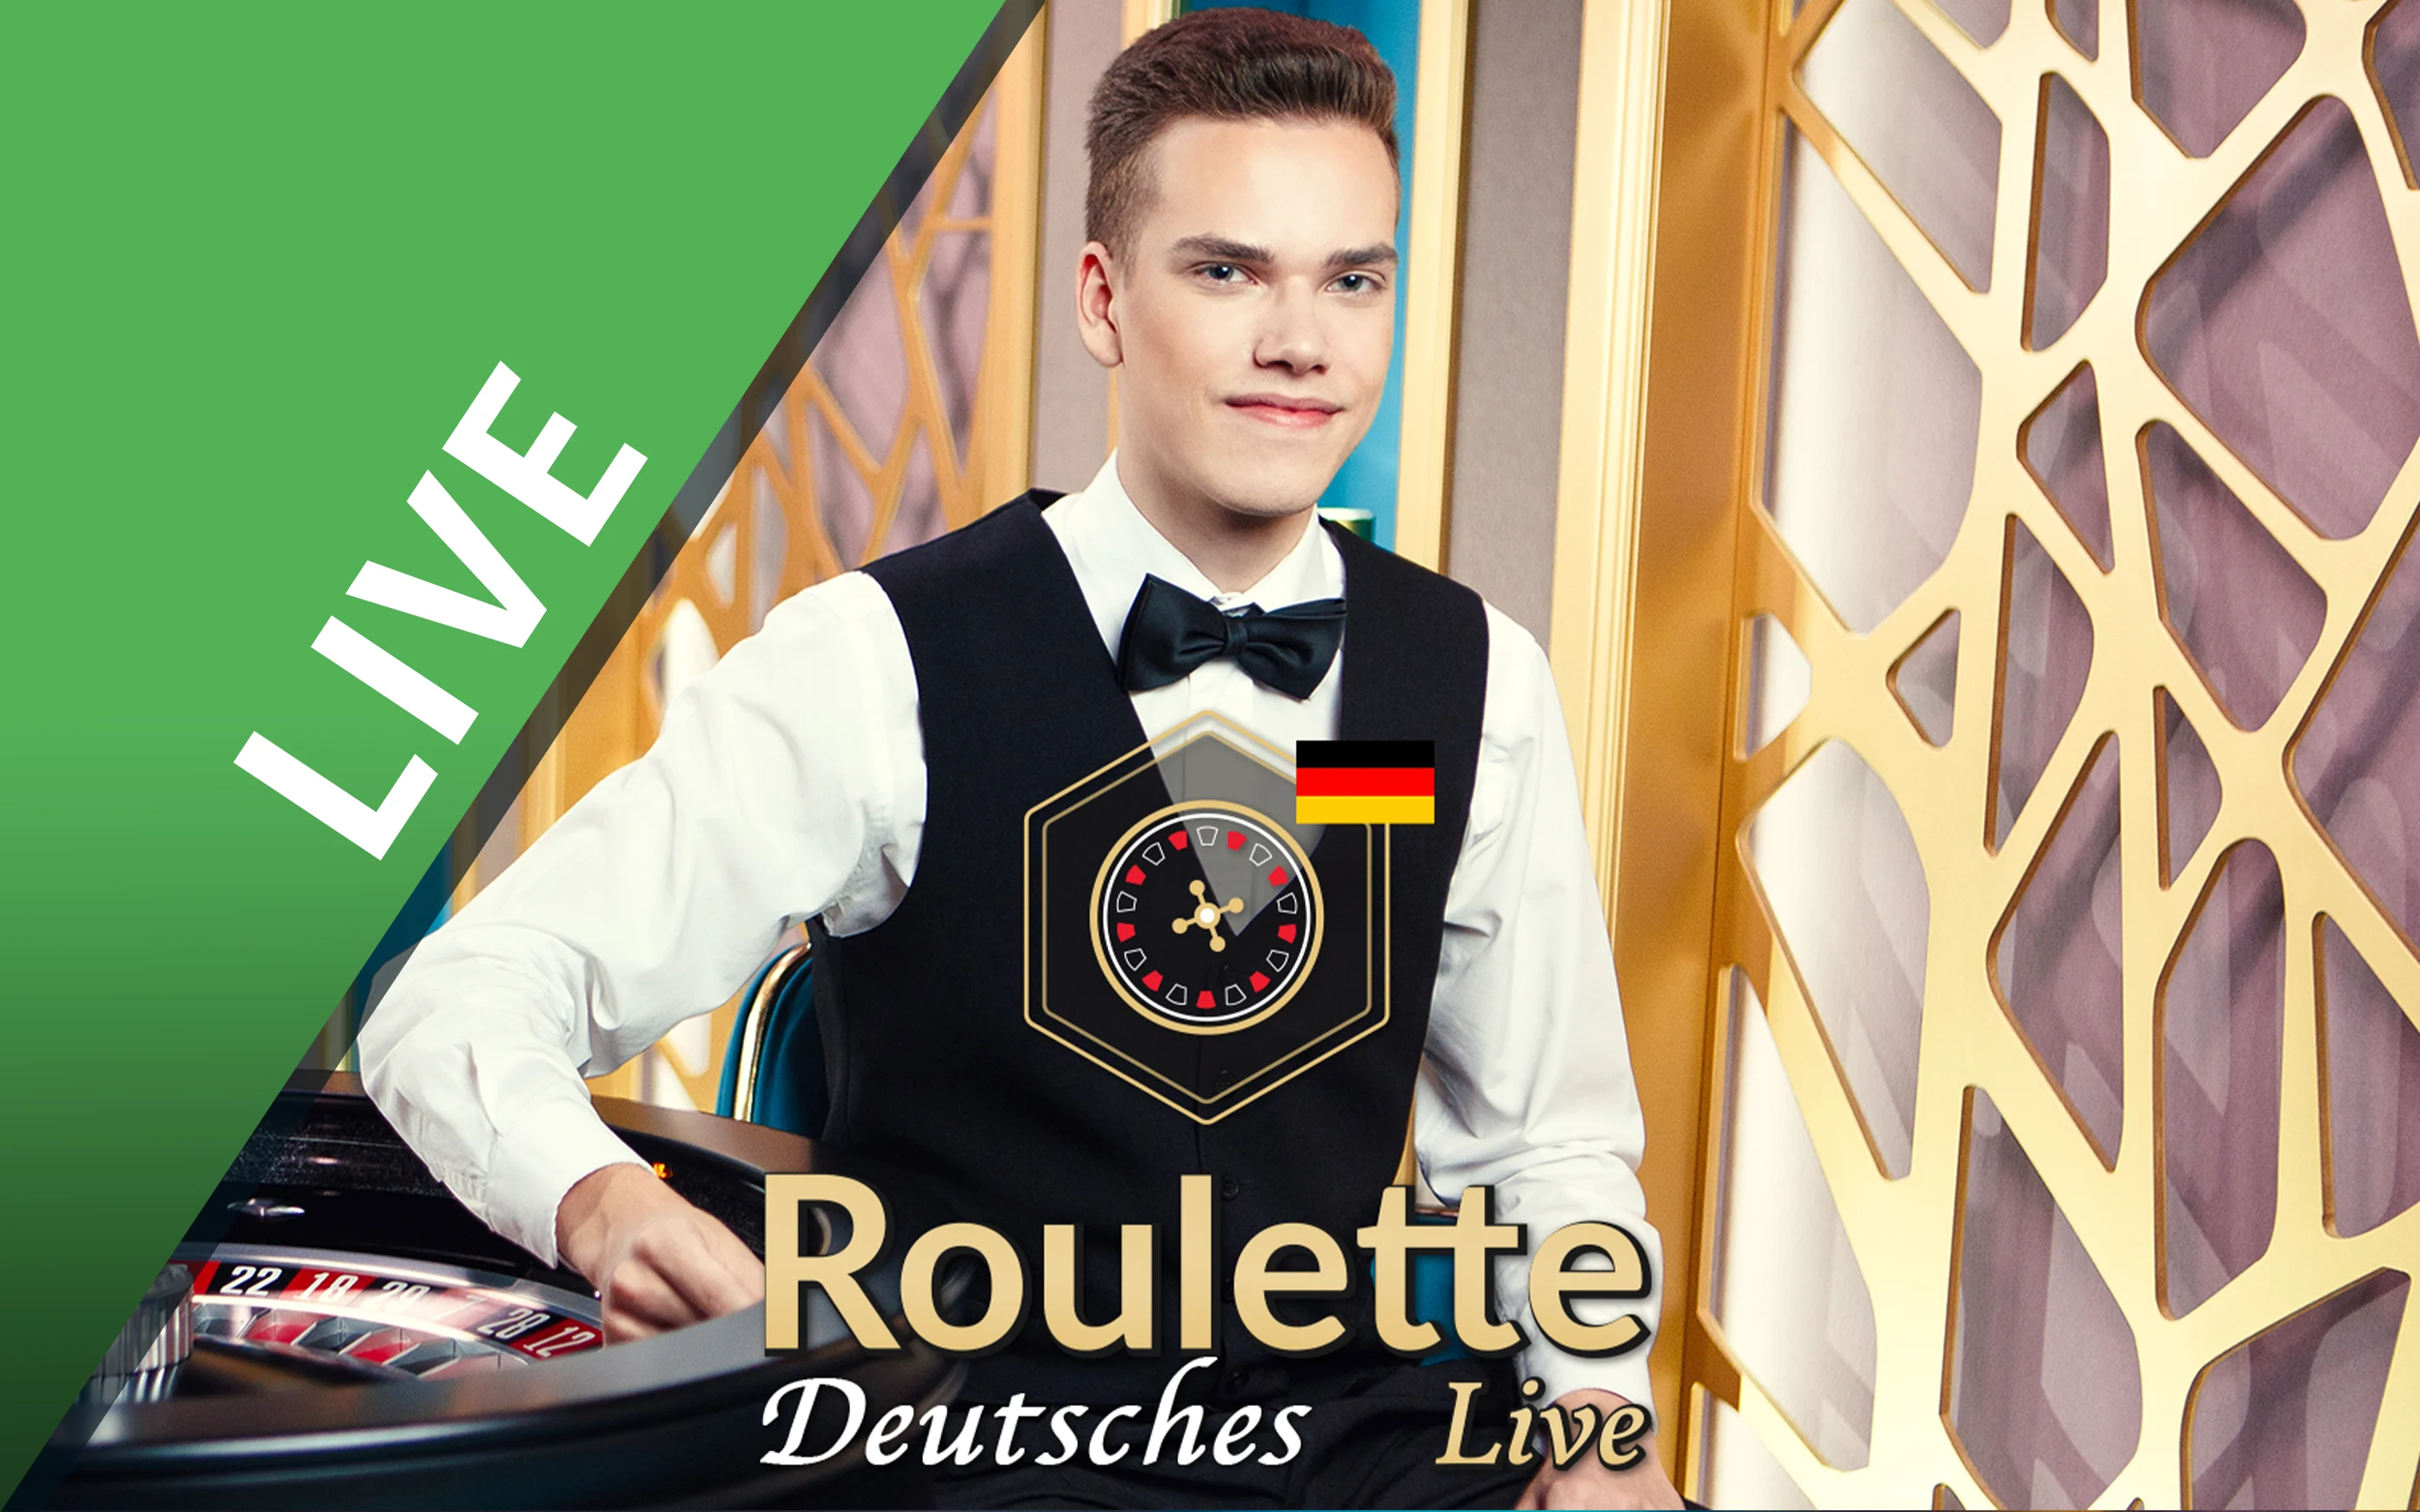 Играйте в Deutsches Roulette в онлайн-казино Starcasino.be